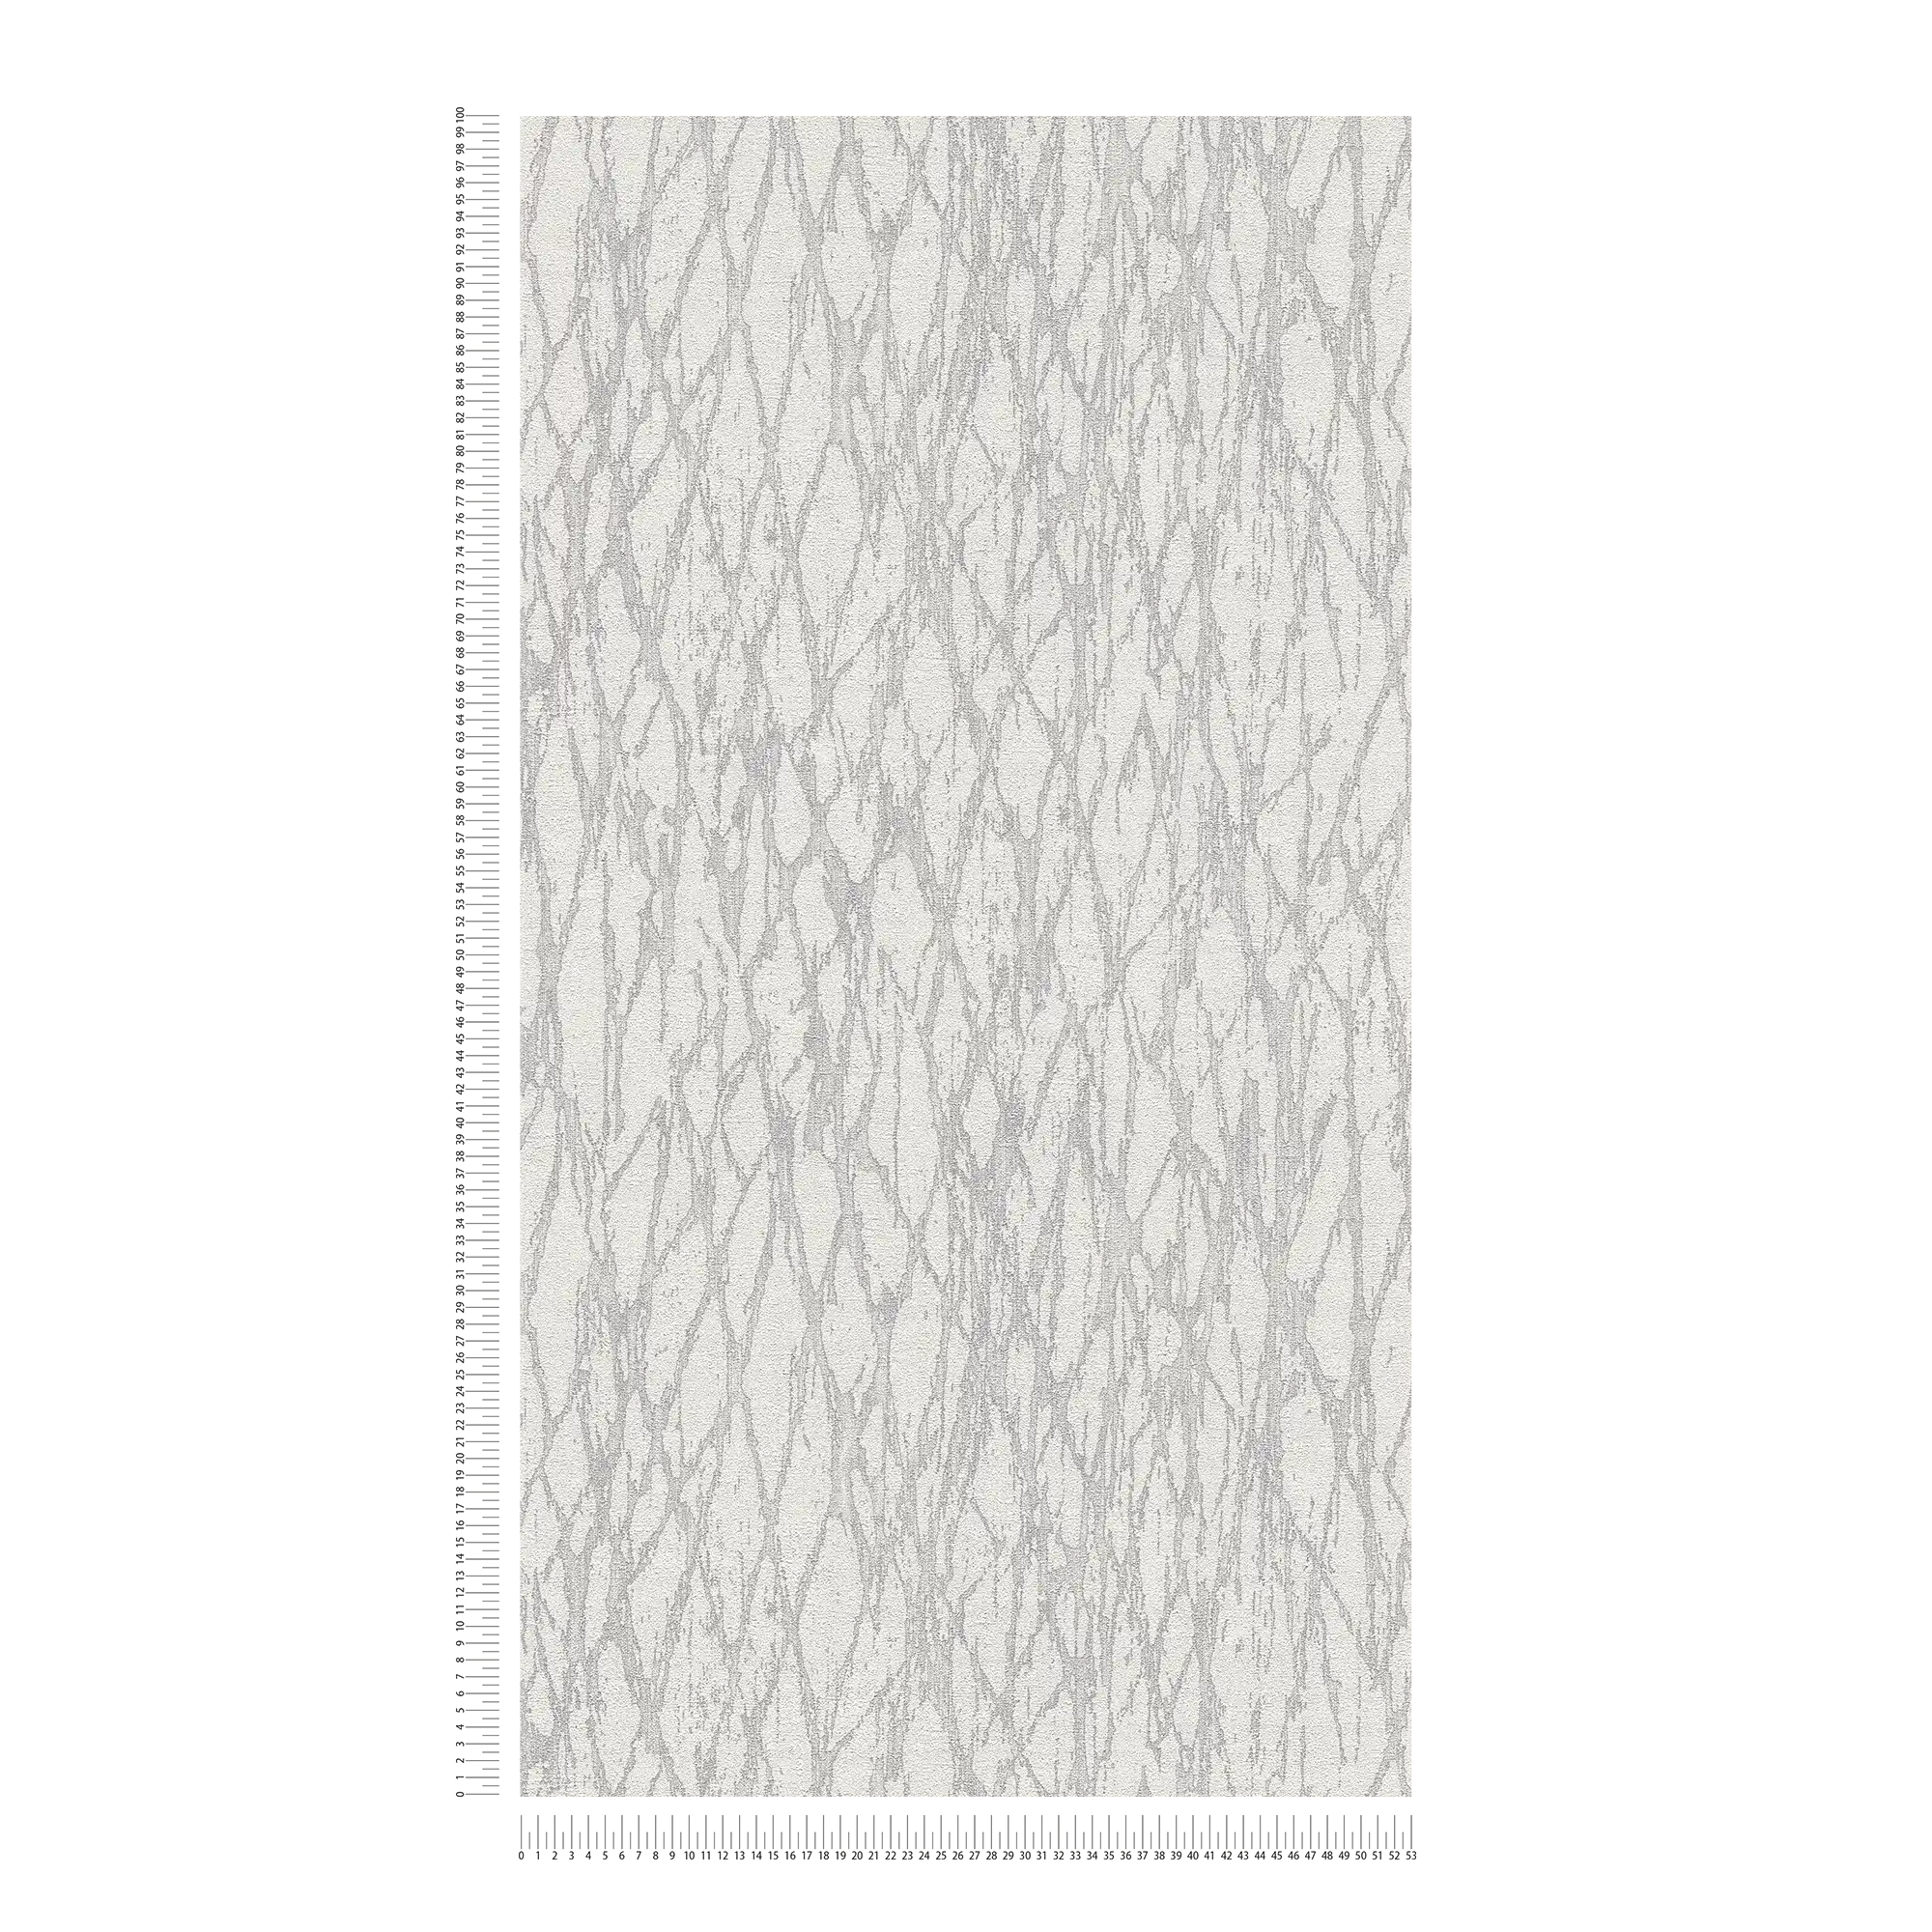             Vliesbehang met abstract lijnenpatroon licht glanzend - wit, grijs, zilver
        